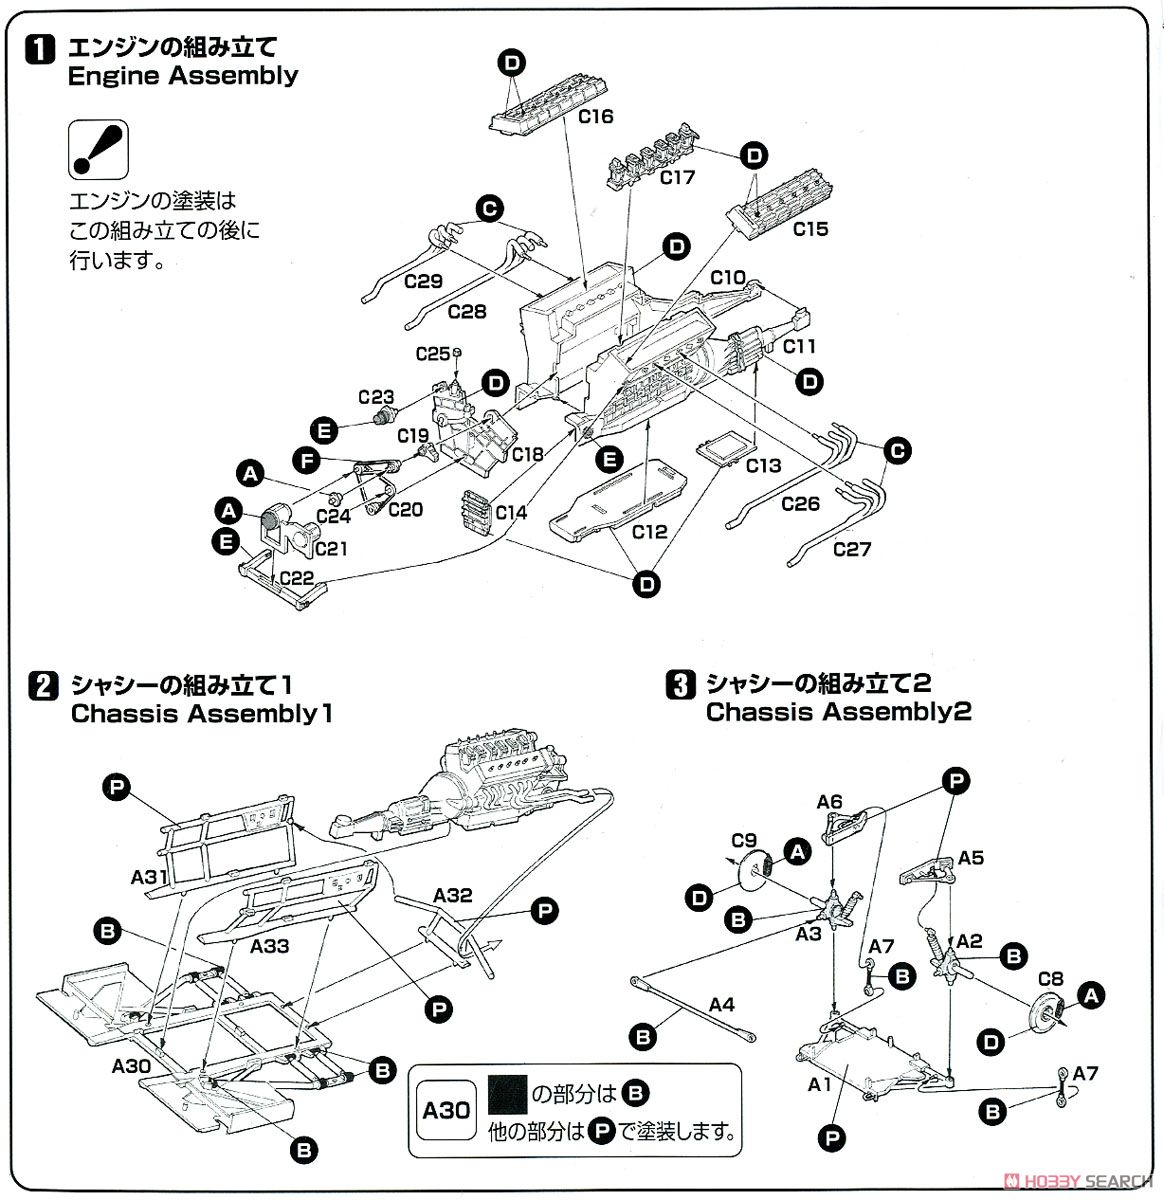 ランボルギーニ カウンタック 25周年アニバーサリー w/ナンバープレート 日本語版特別仕様 (プラモデル) 設計図1